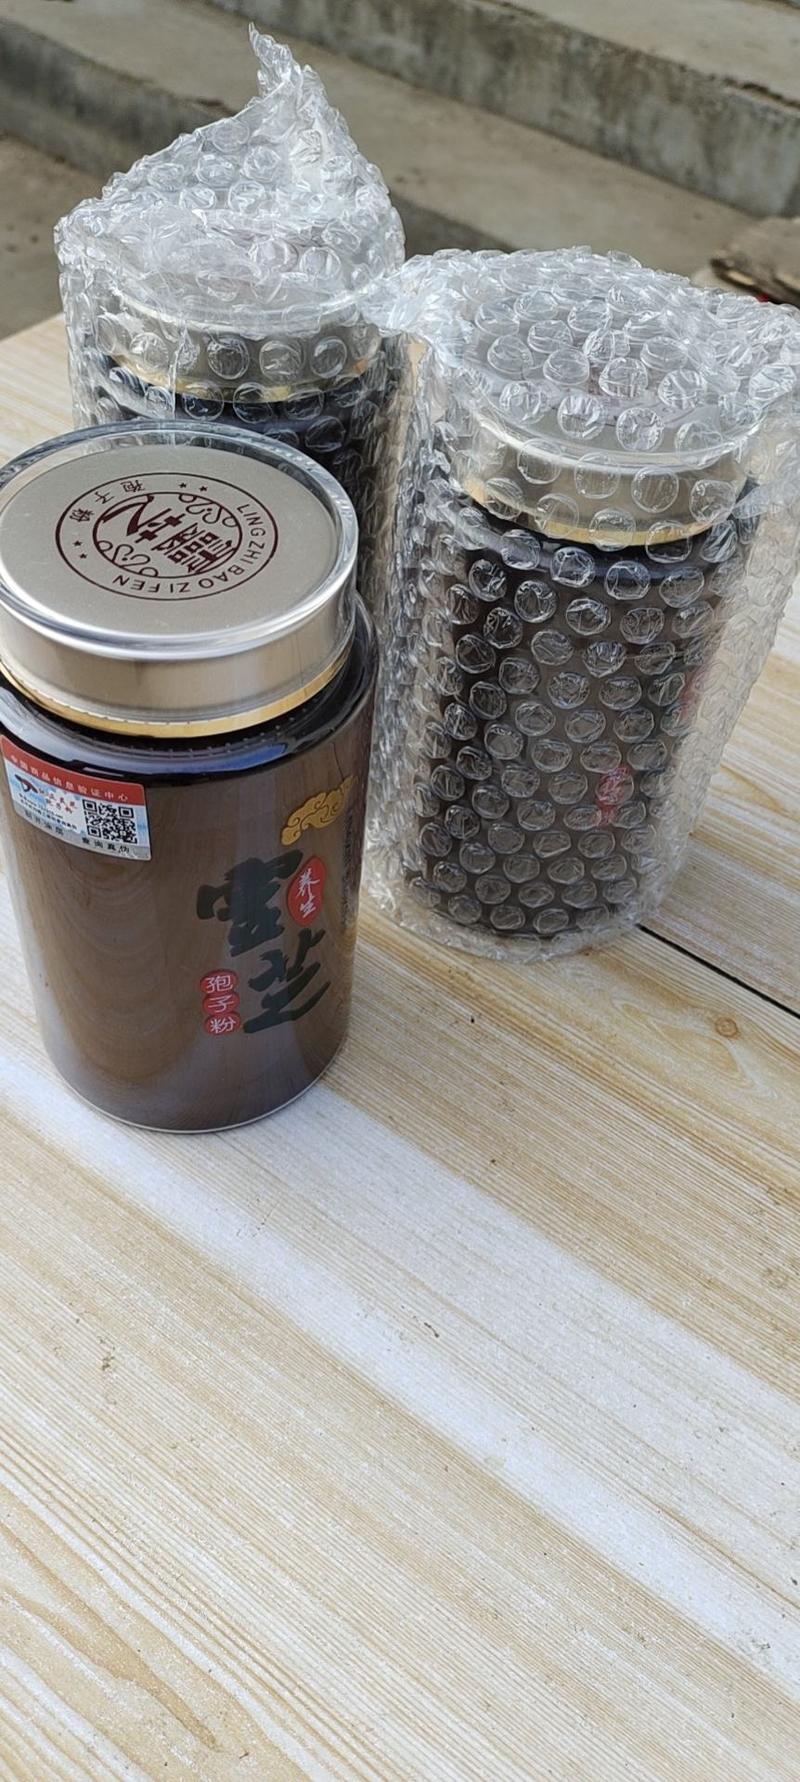 吉林省通化市原产地灵芝孢子粉孢子油丰富一斤两瓶装